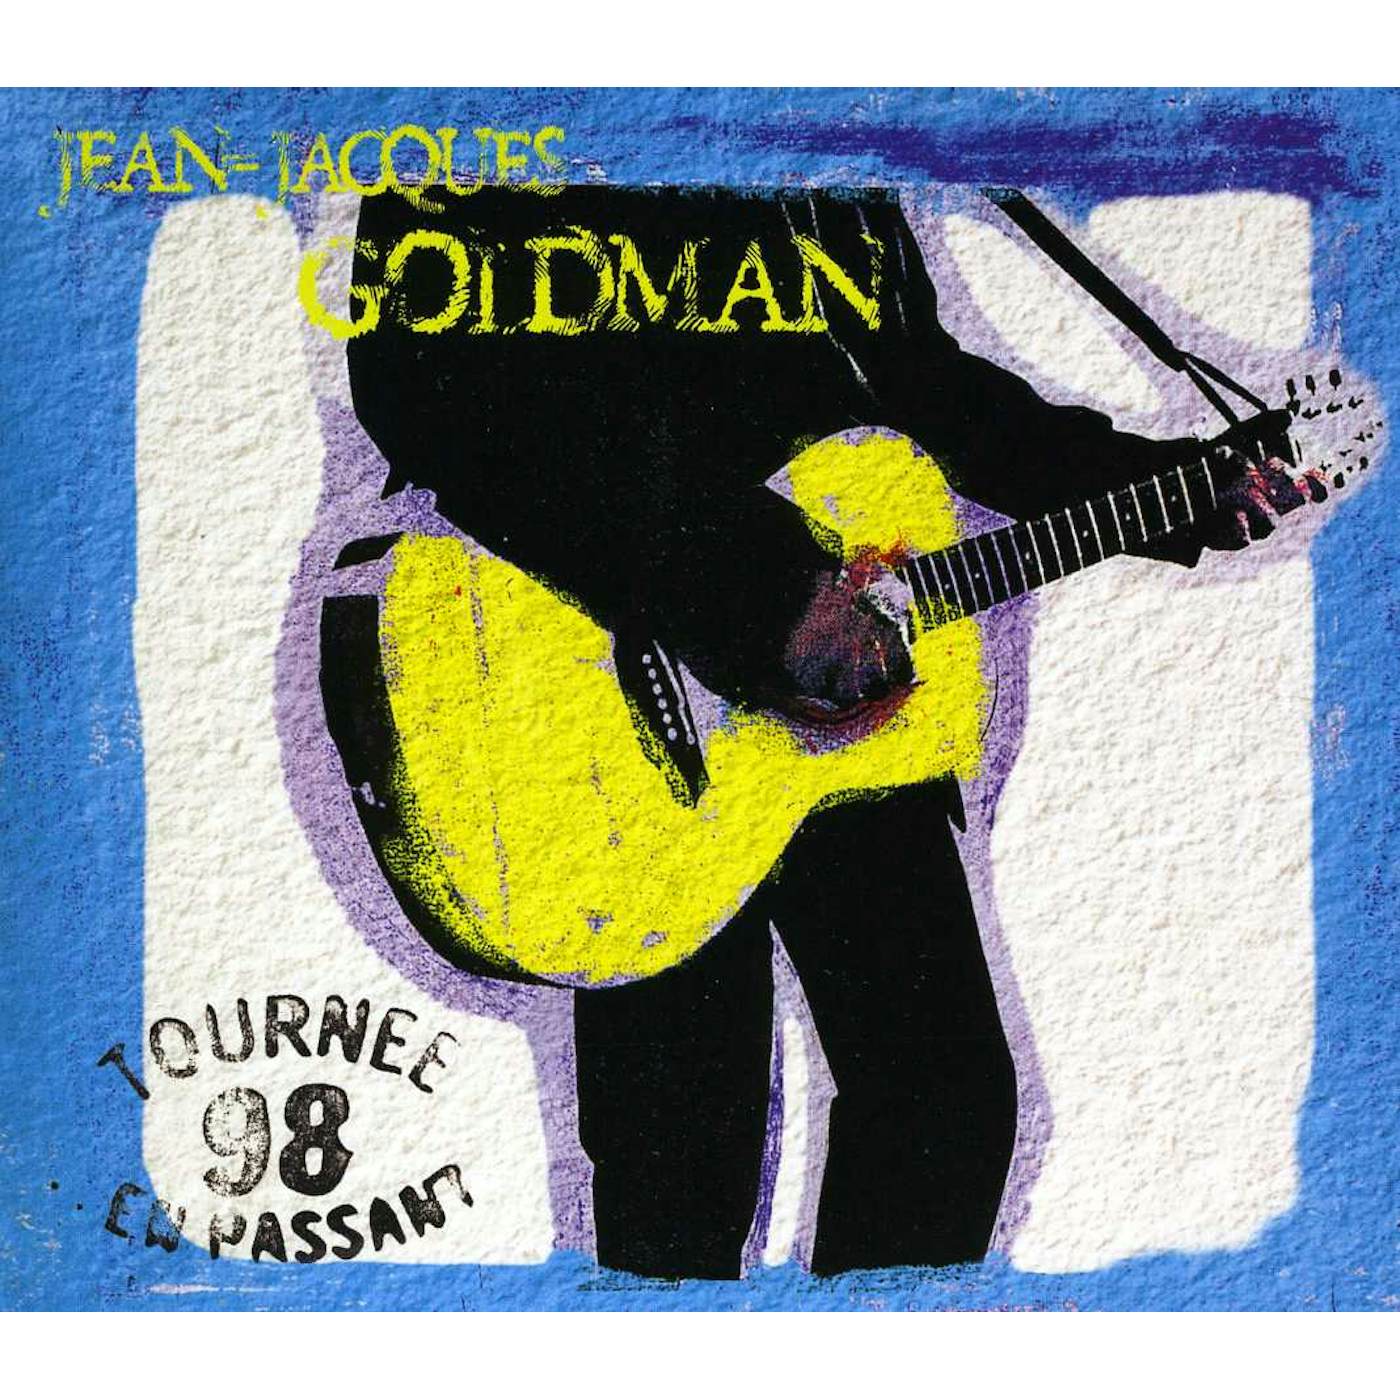 Jean-Jacques Goldman LIVE 98 EN PASSANT CD